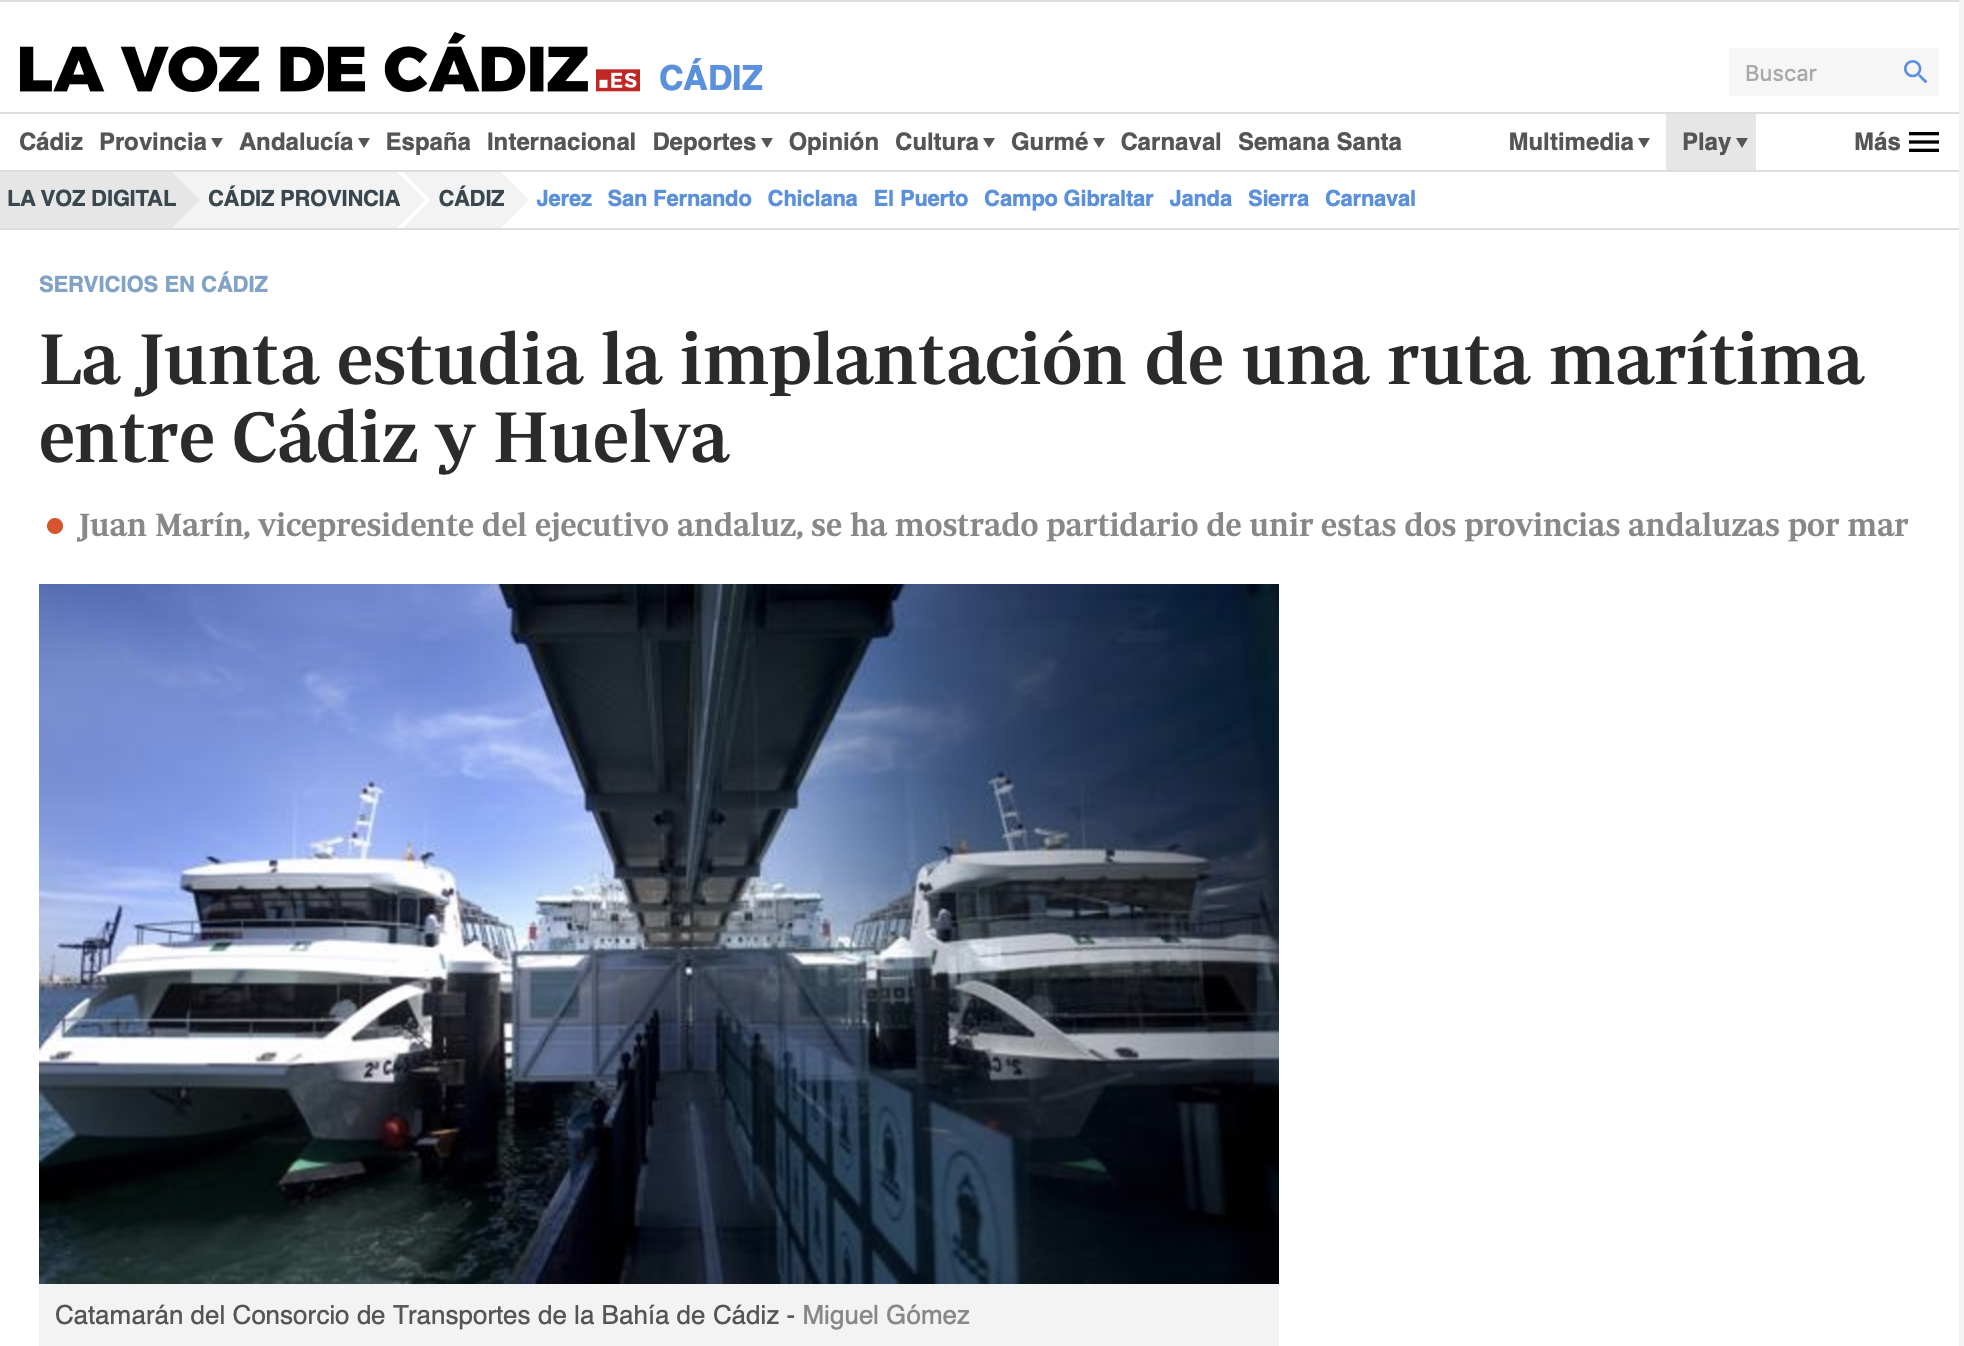 La Junta estudia la implantación de una ruta marítima entre Cádiz y Huelva